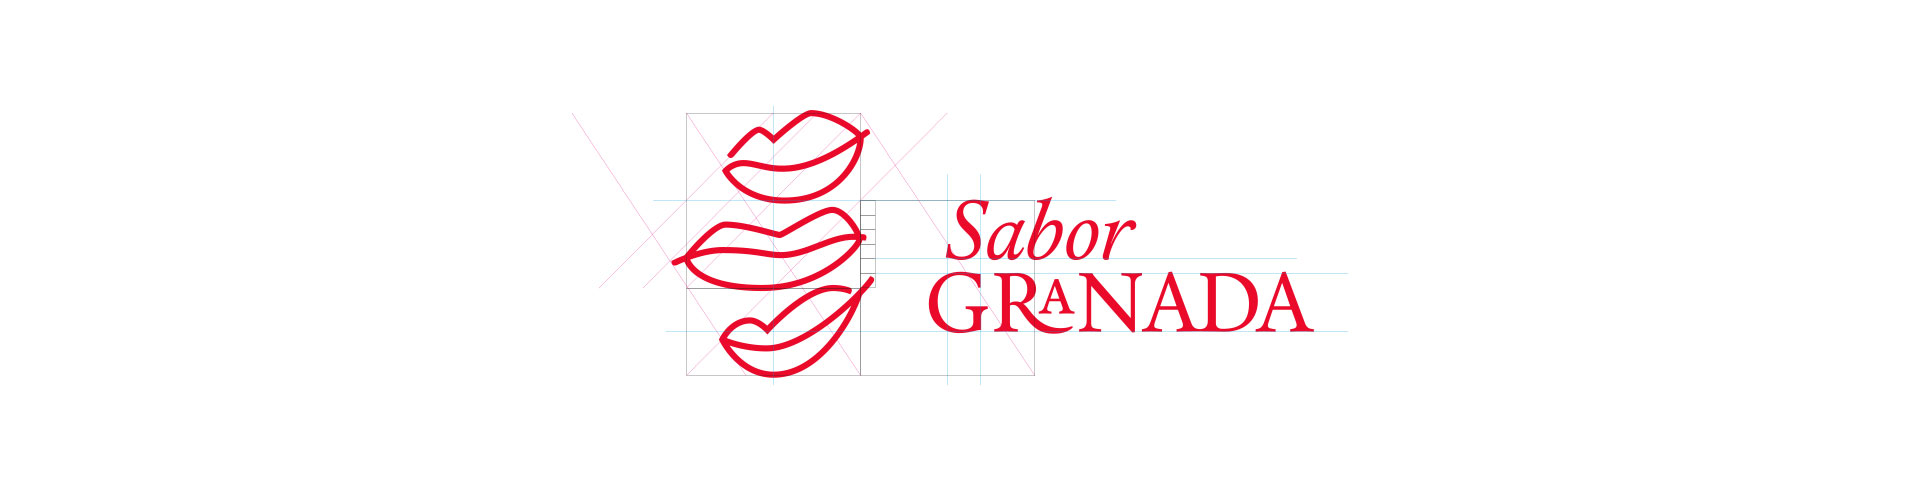 versión del logotipo Sabor Granada